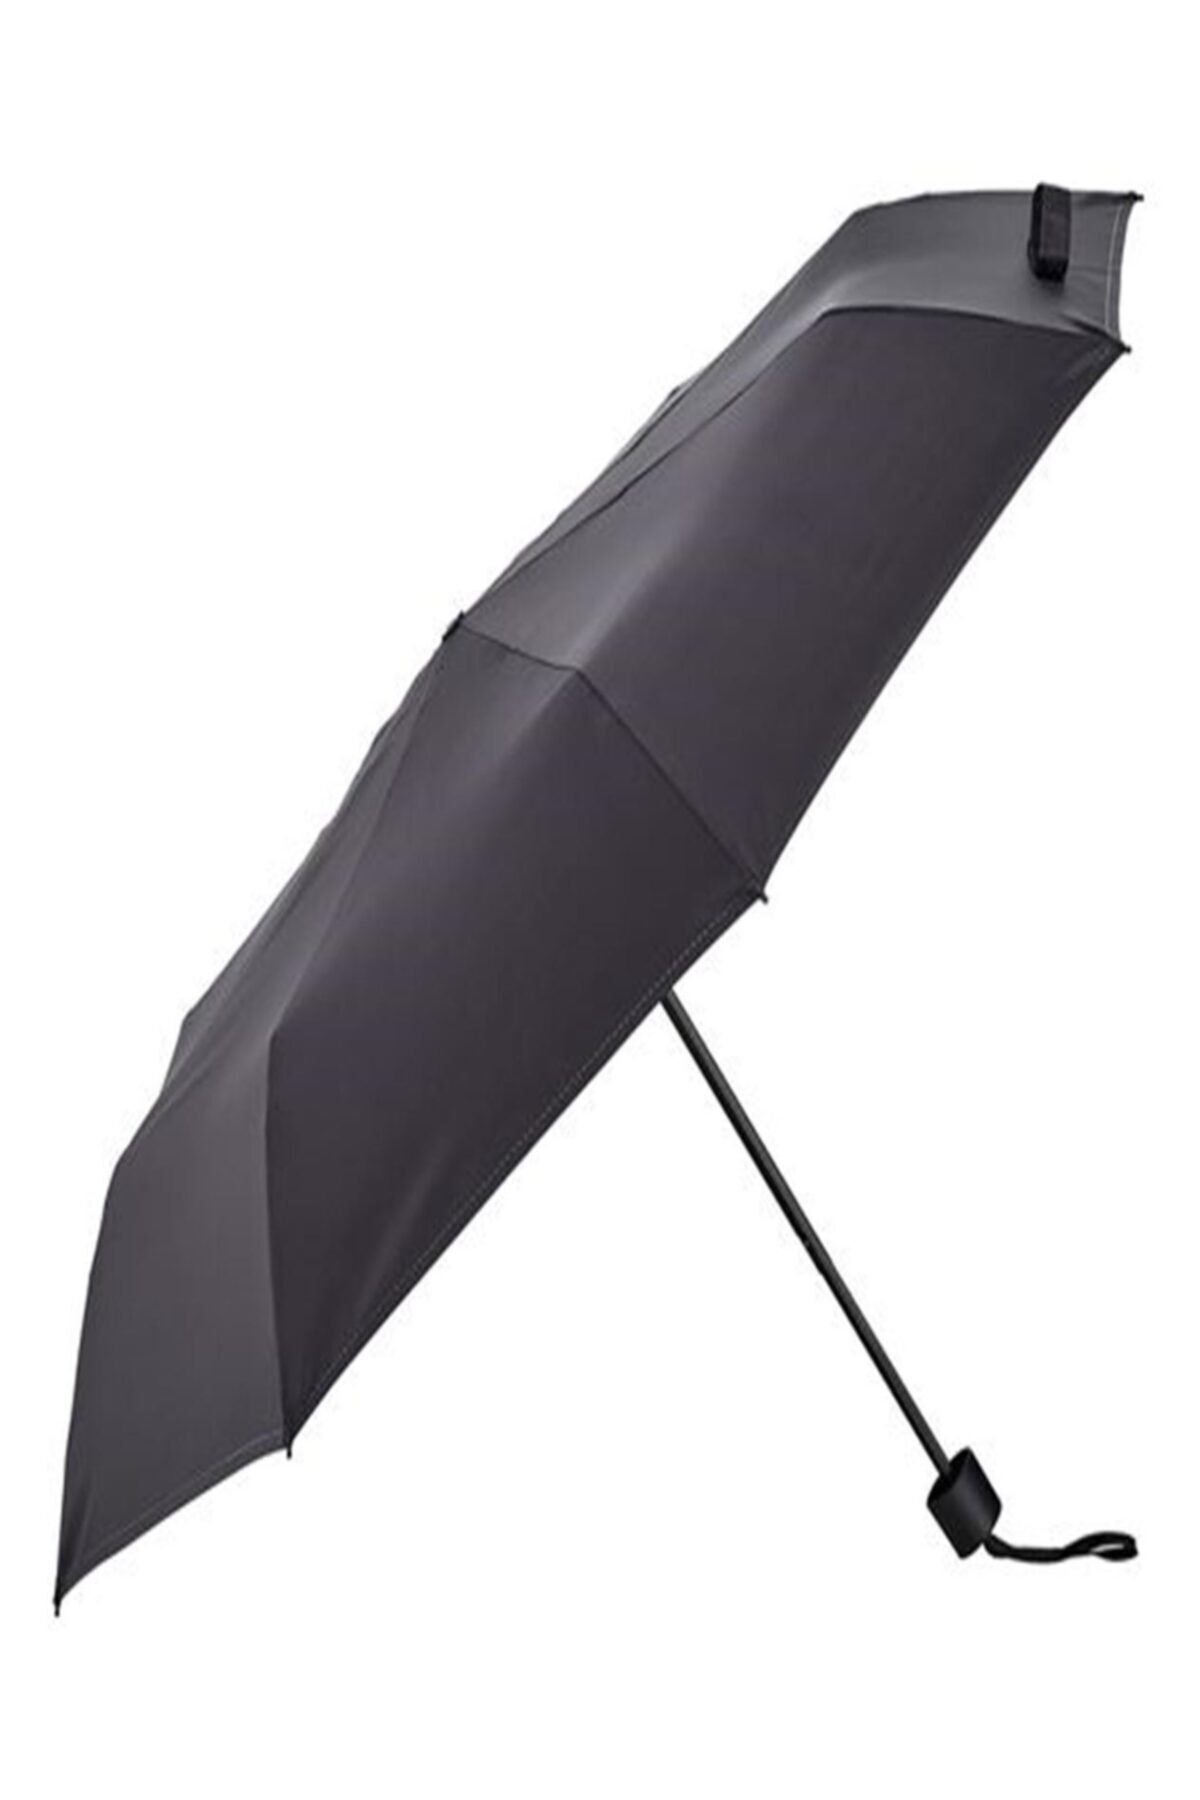 IKEA Knalla Katlanabilir Şemsiye Siyah